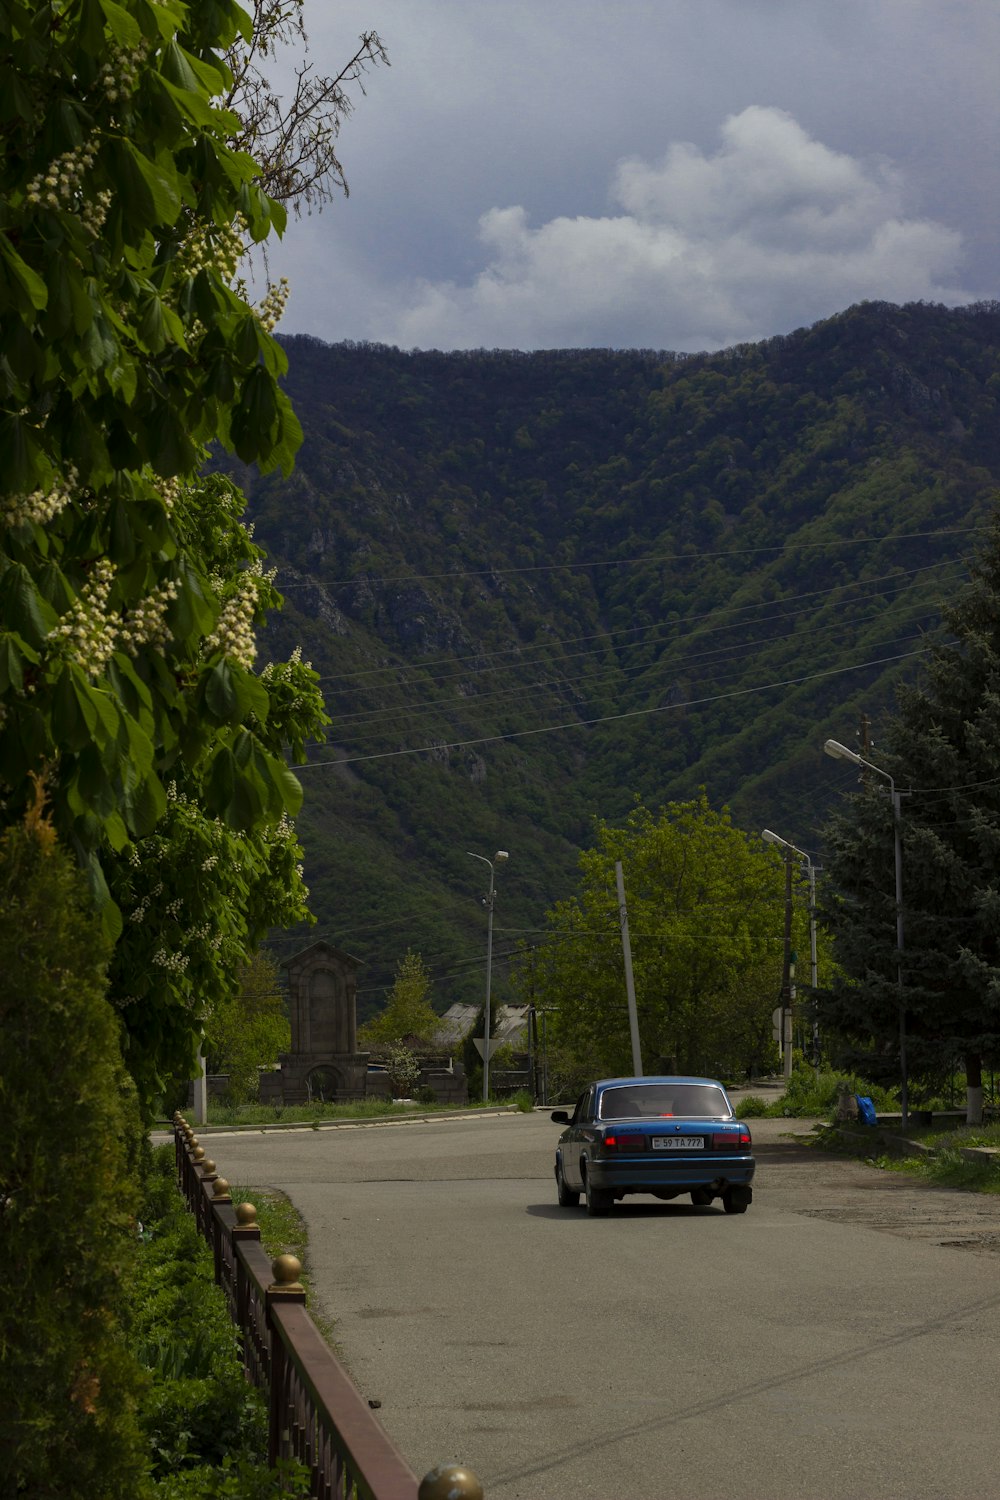 Une voiture descendant une rue à côté d’une colline verdoyante